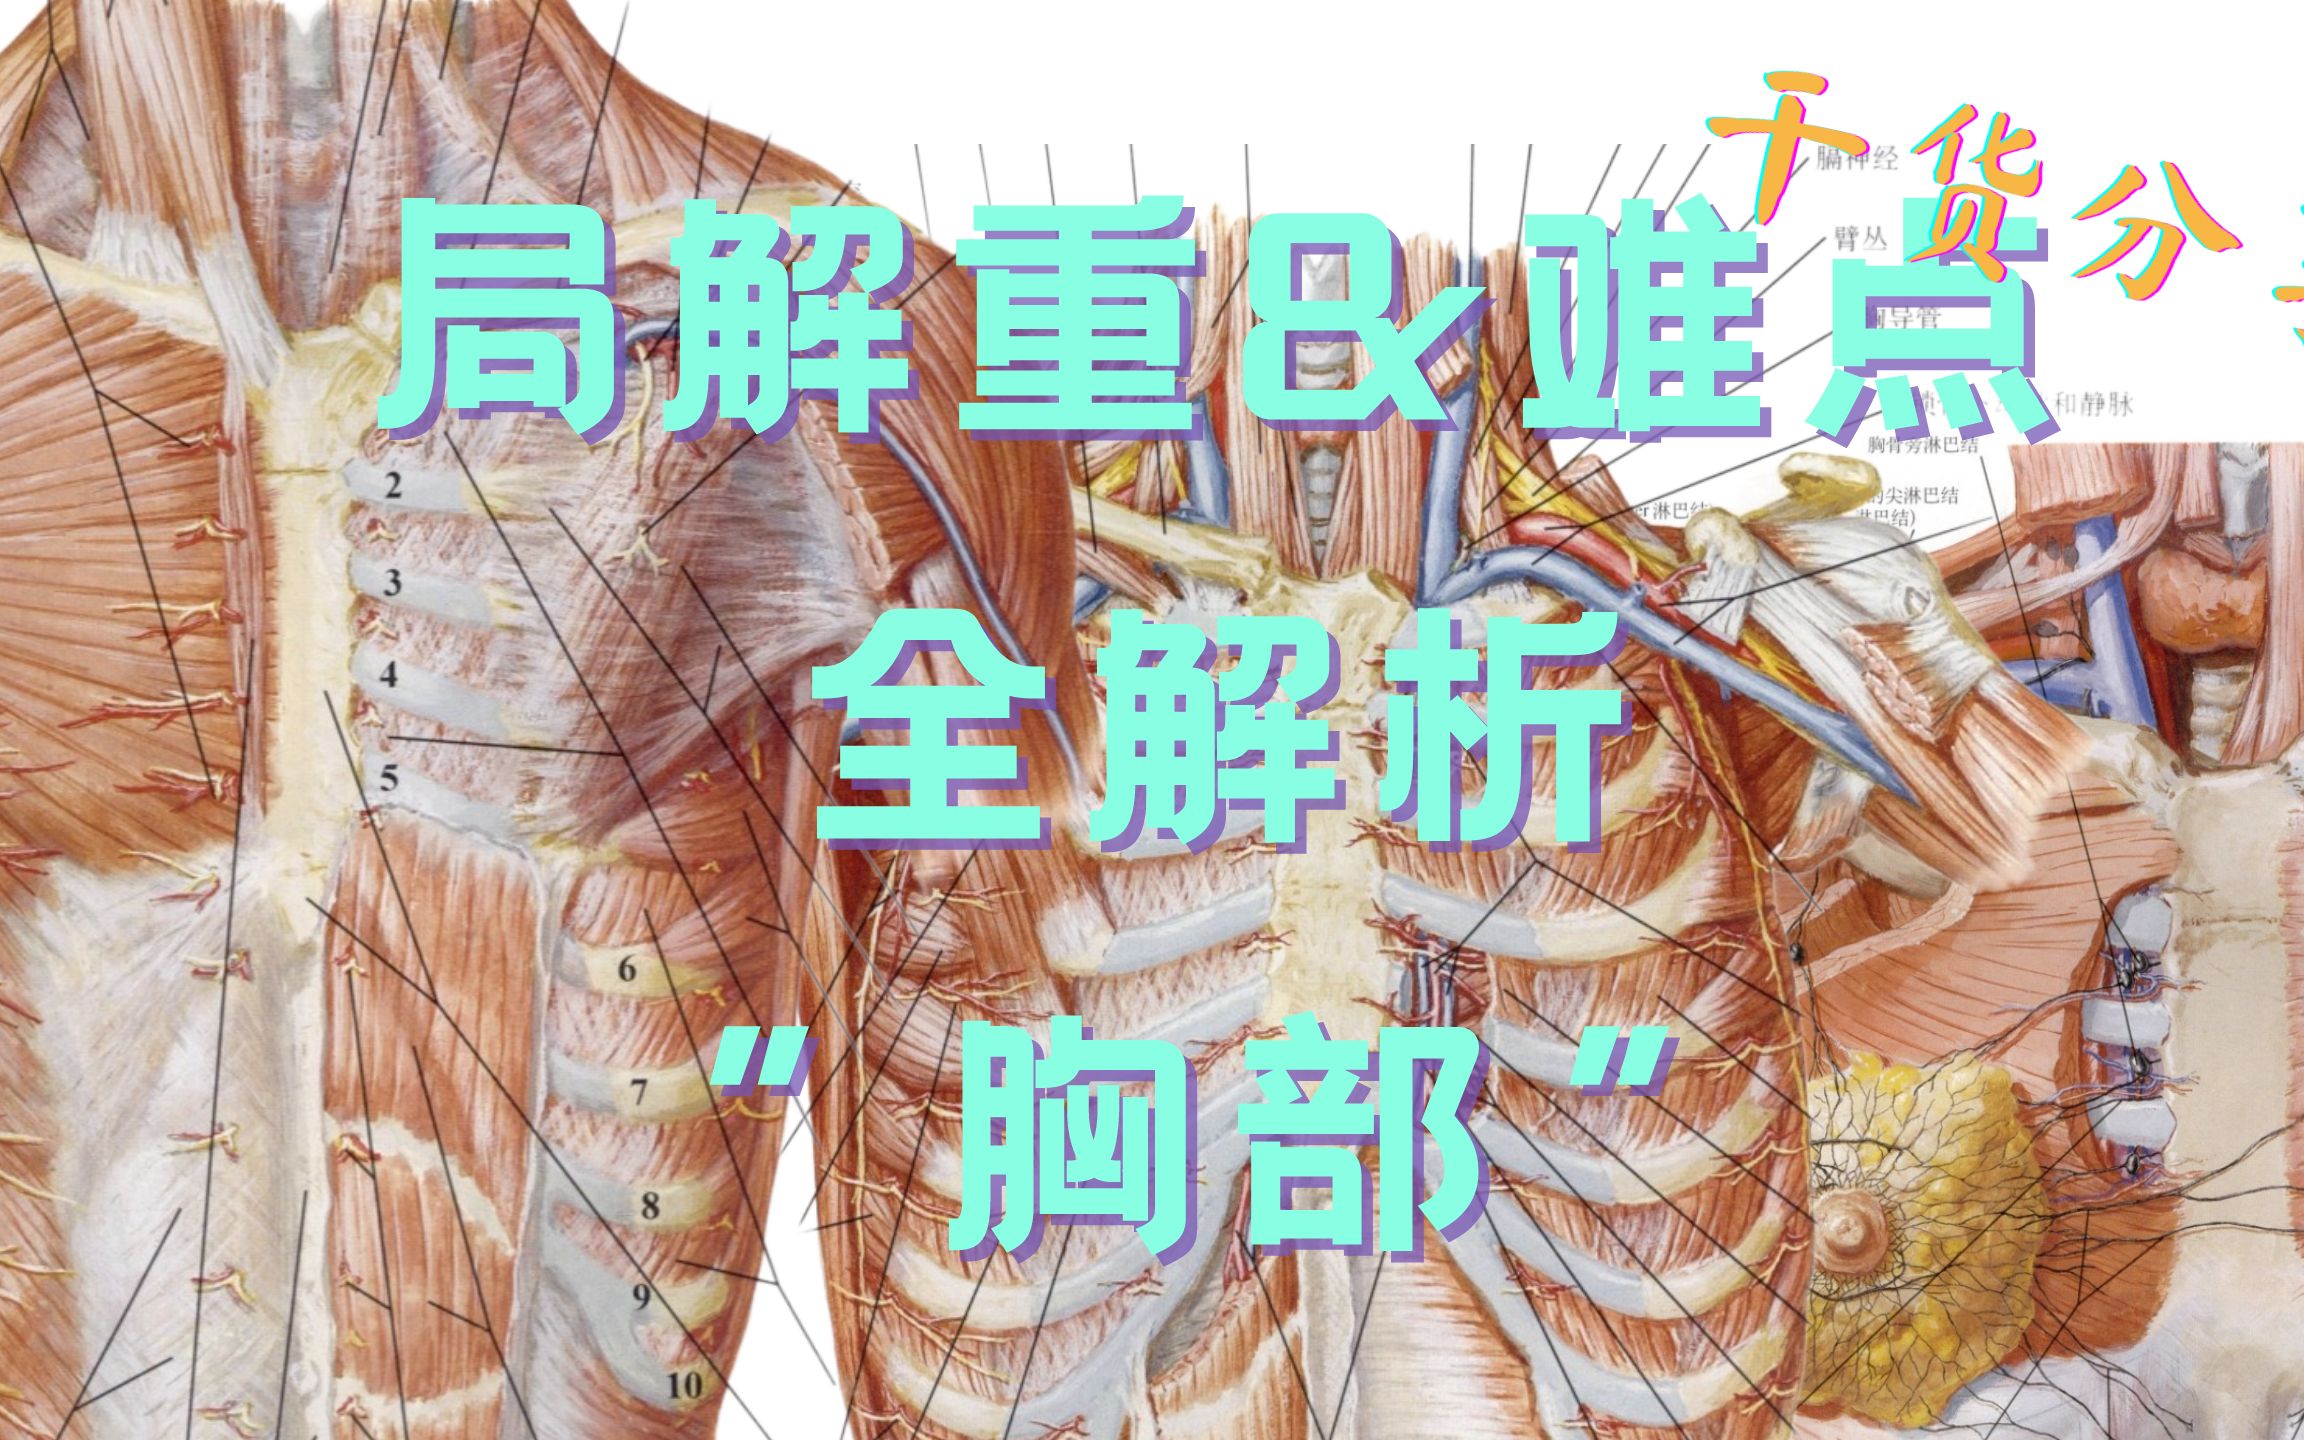 图51 胸廓-人体解剖组织学-医学